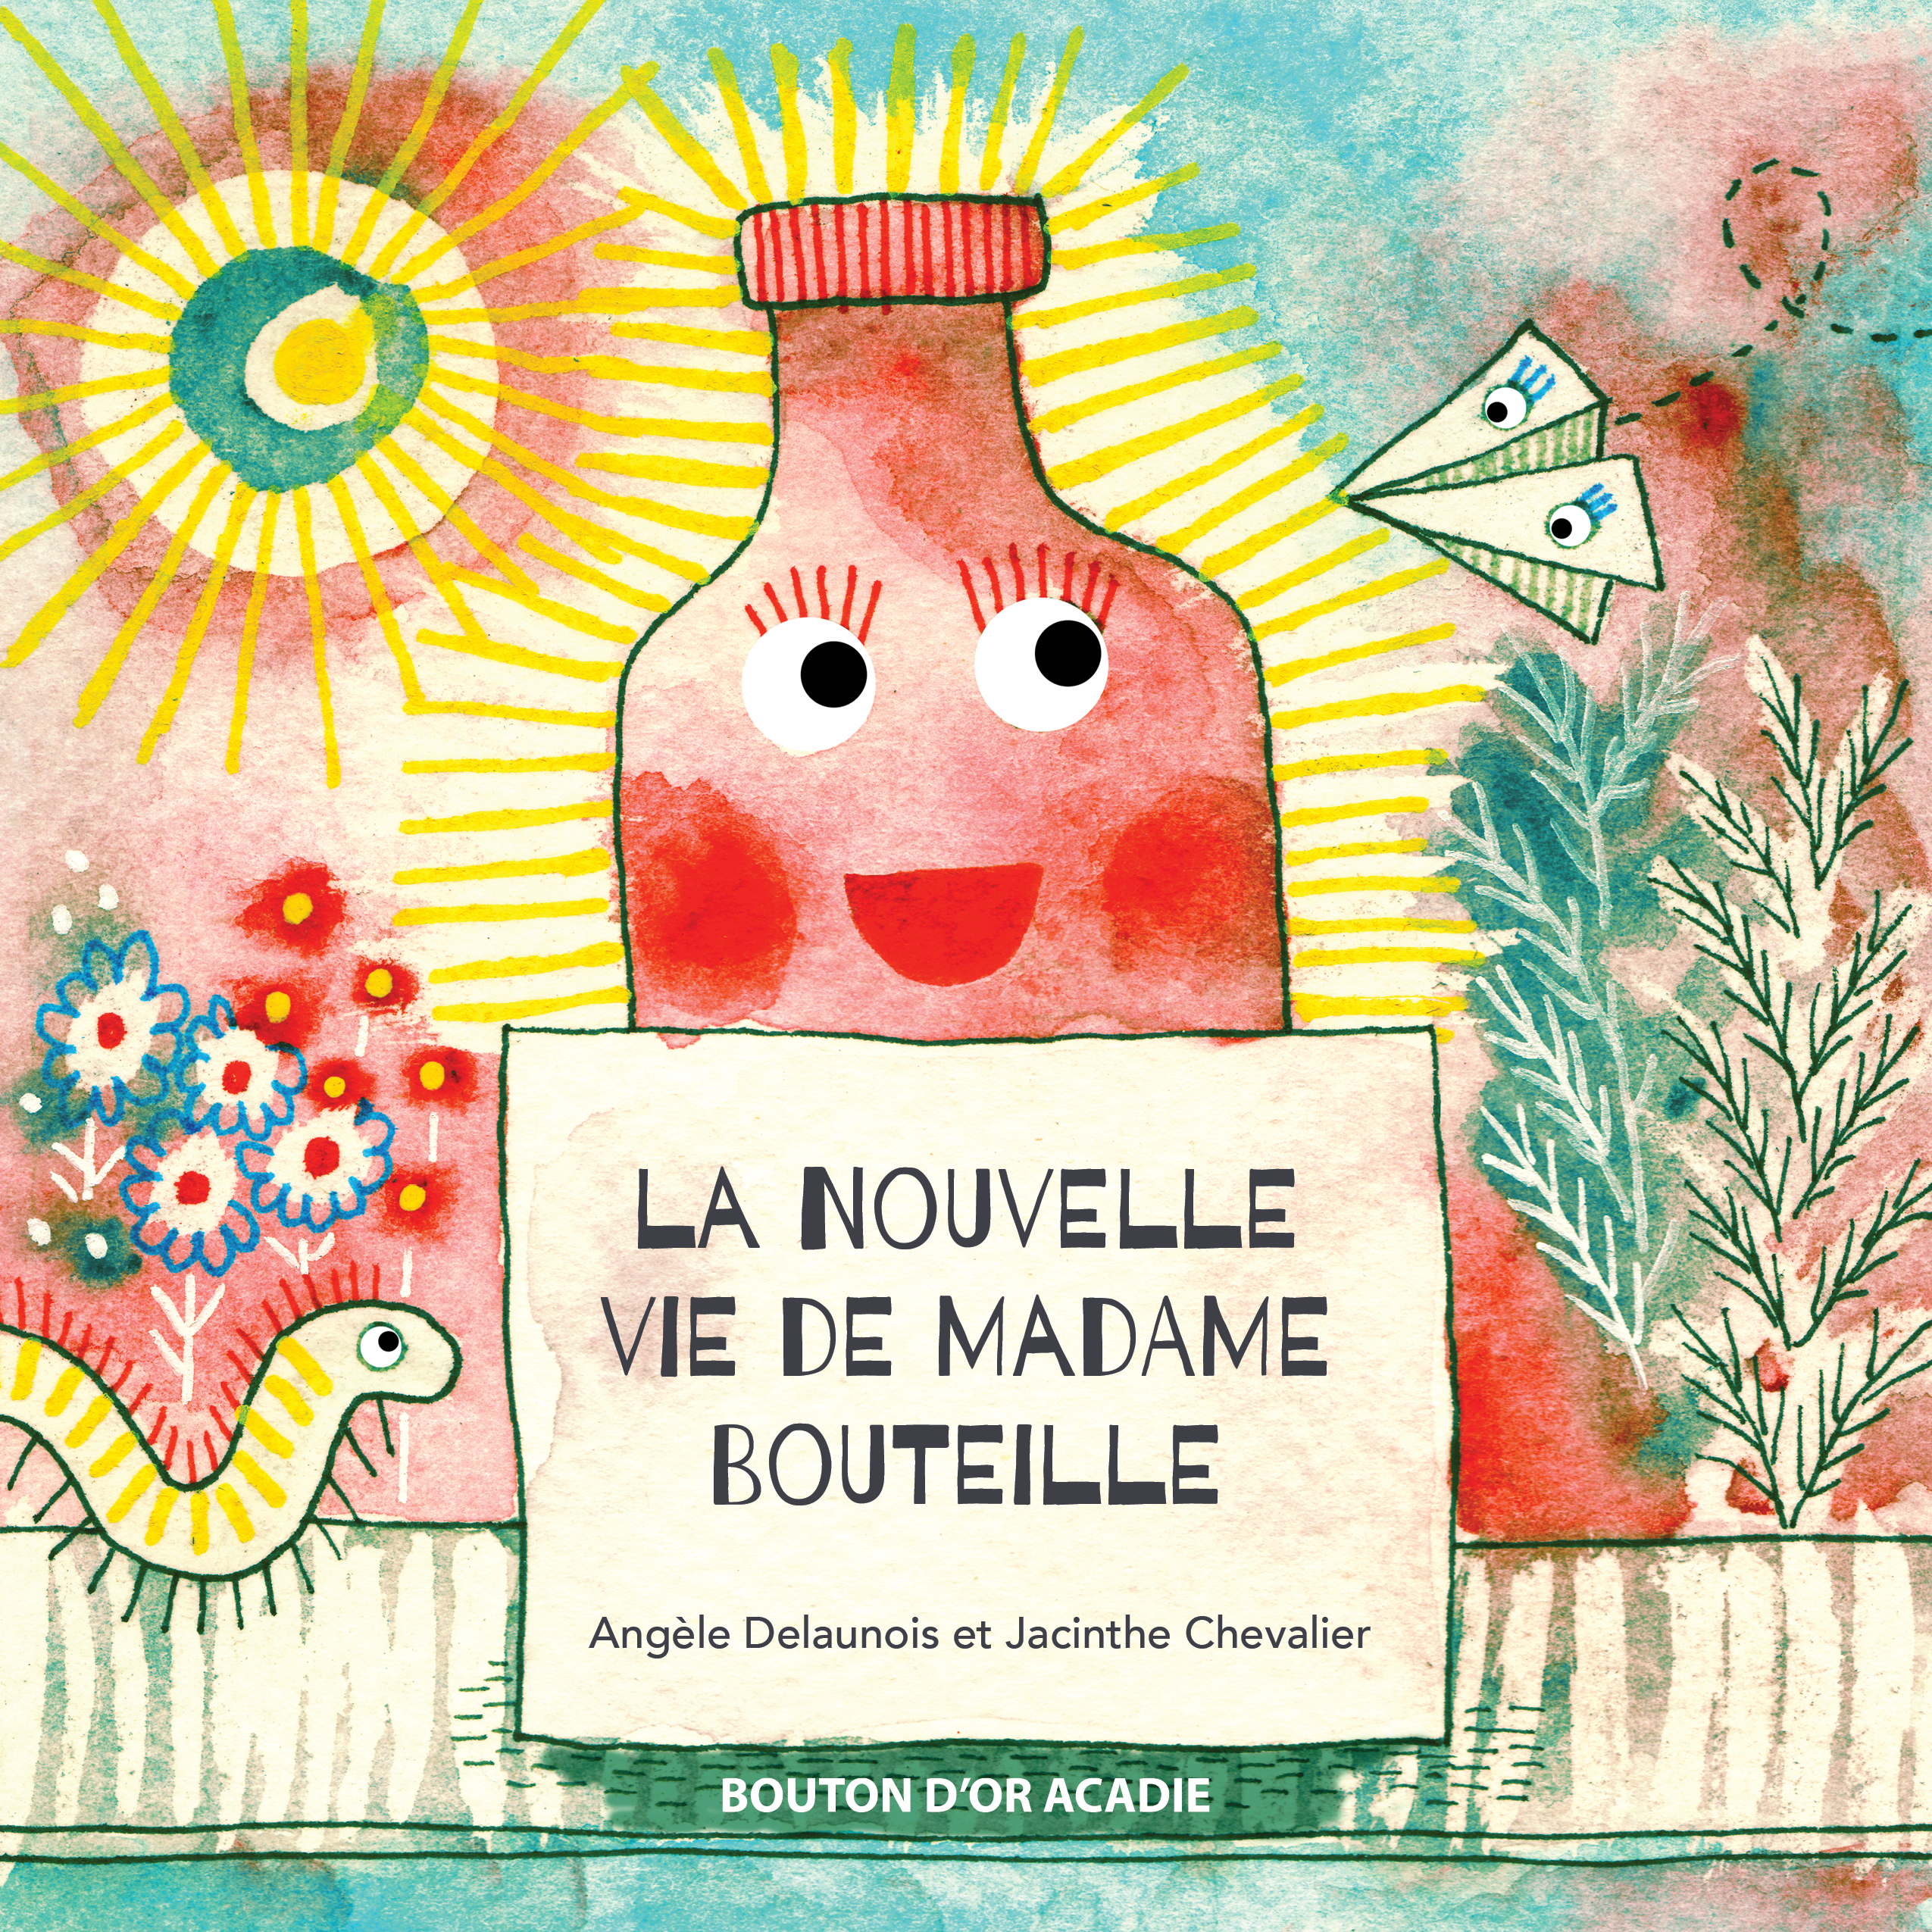 La nouvelle vie de Madame Bouteille (Madam Bottle’s New Life)